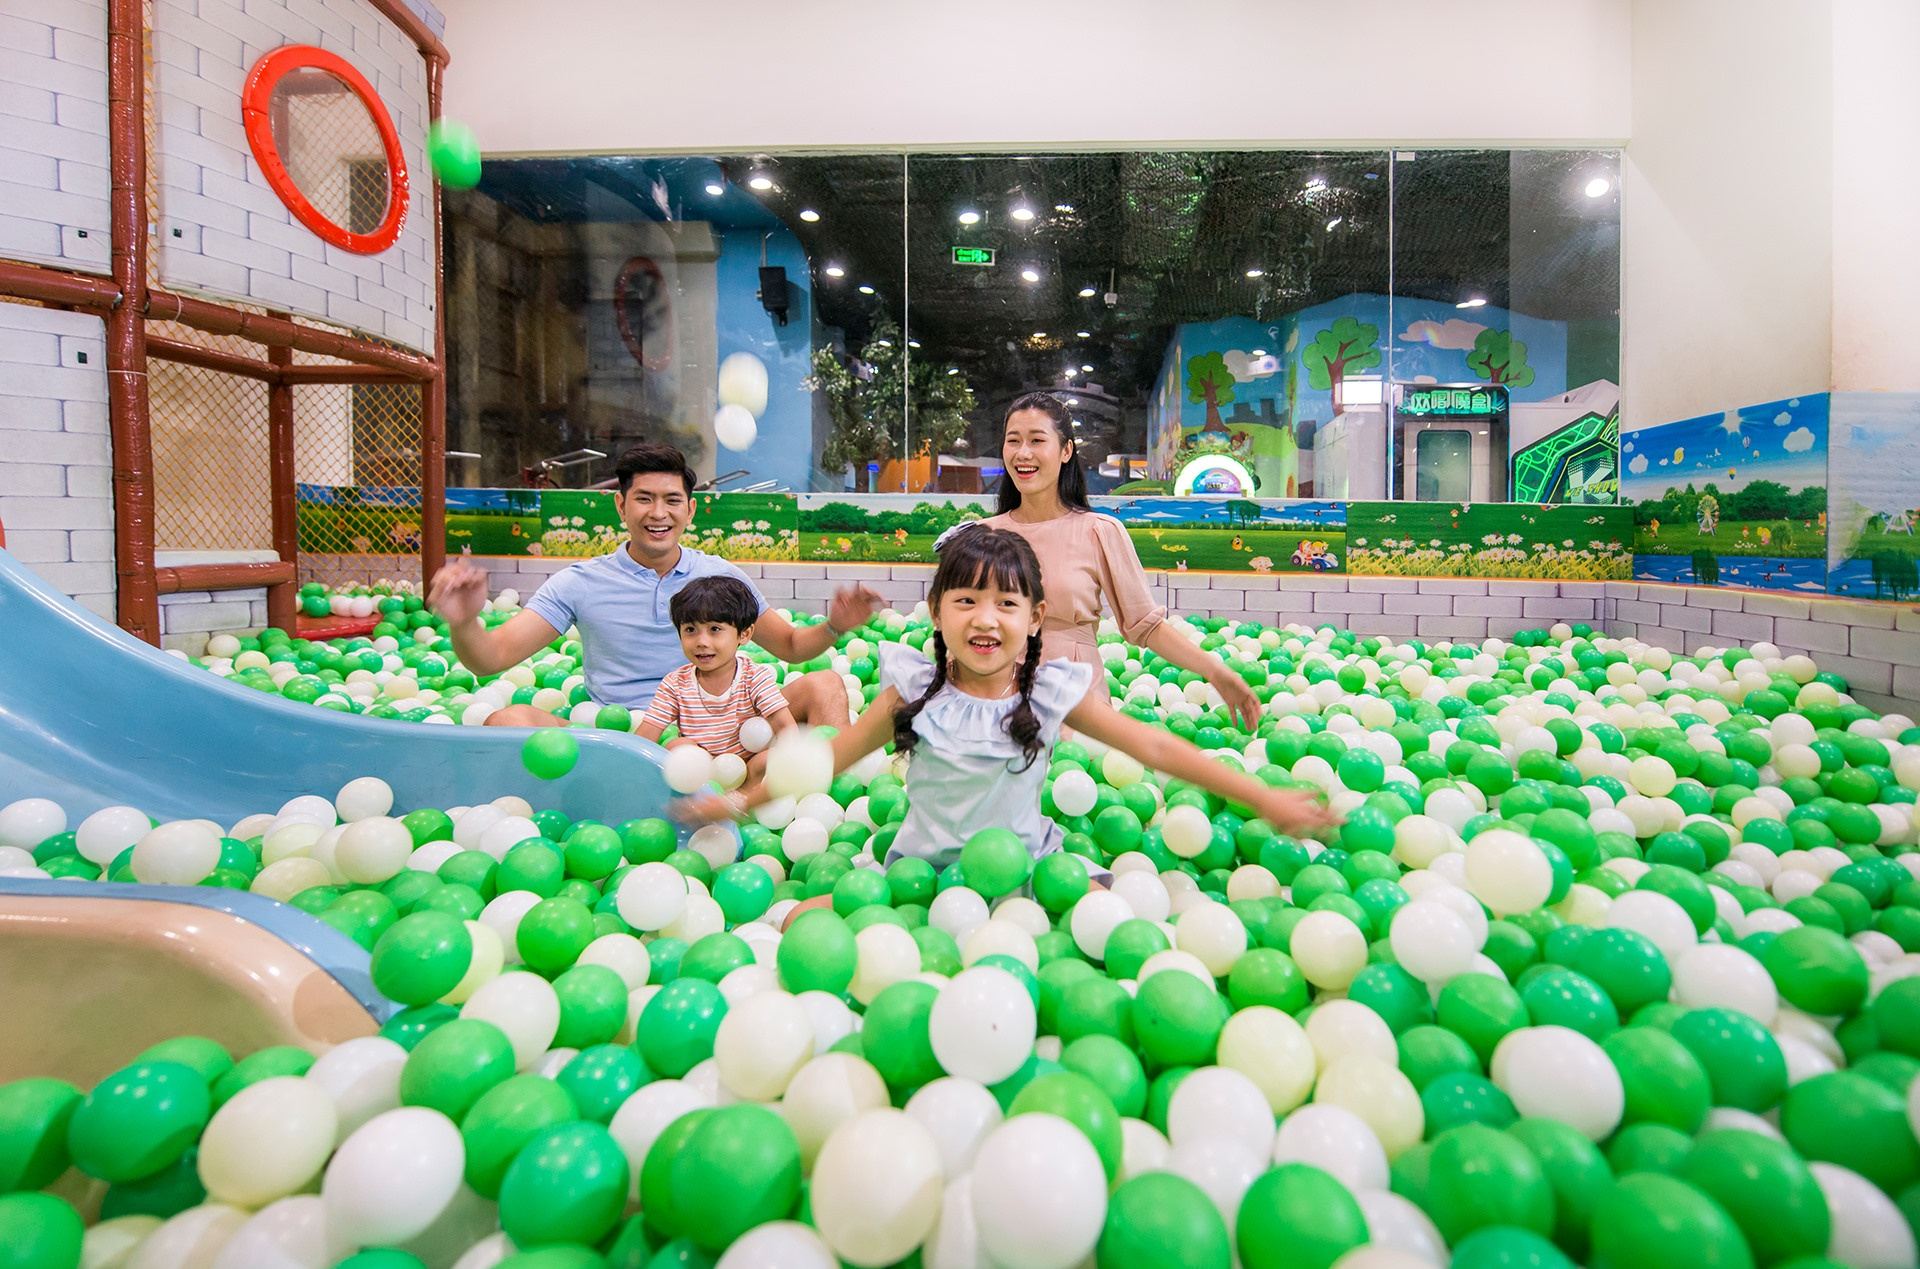 Khu vui chơi dành cho trẻ em tại Hà Nội